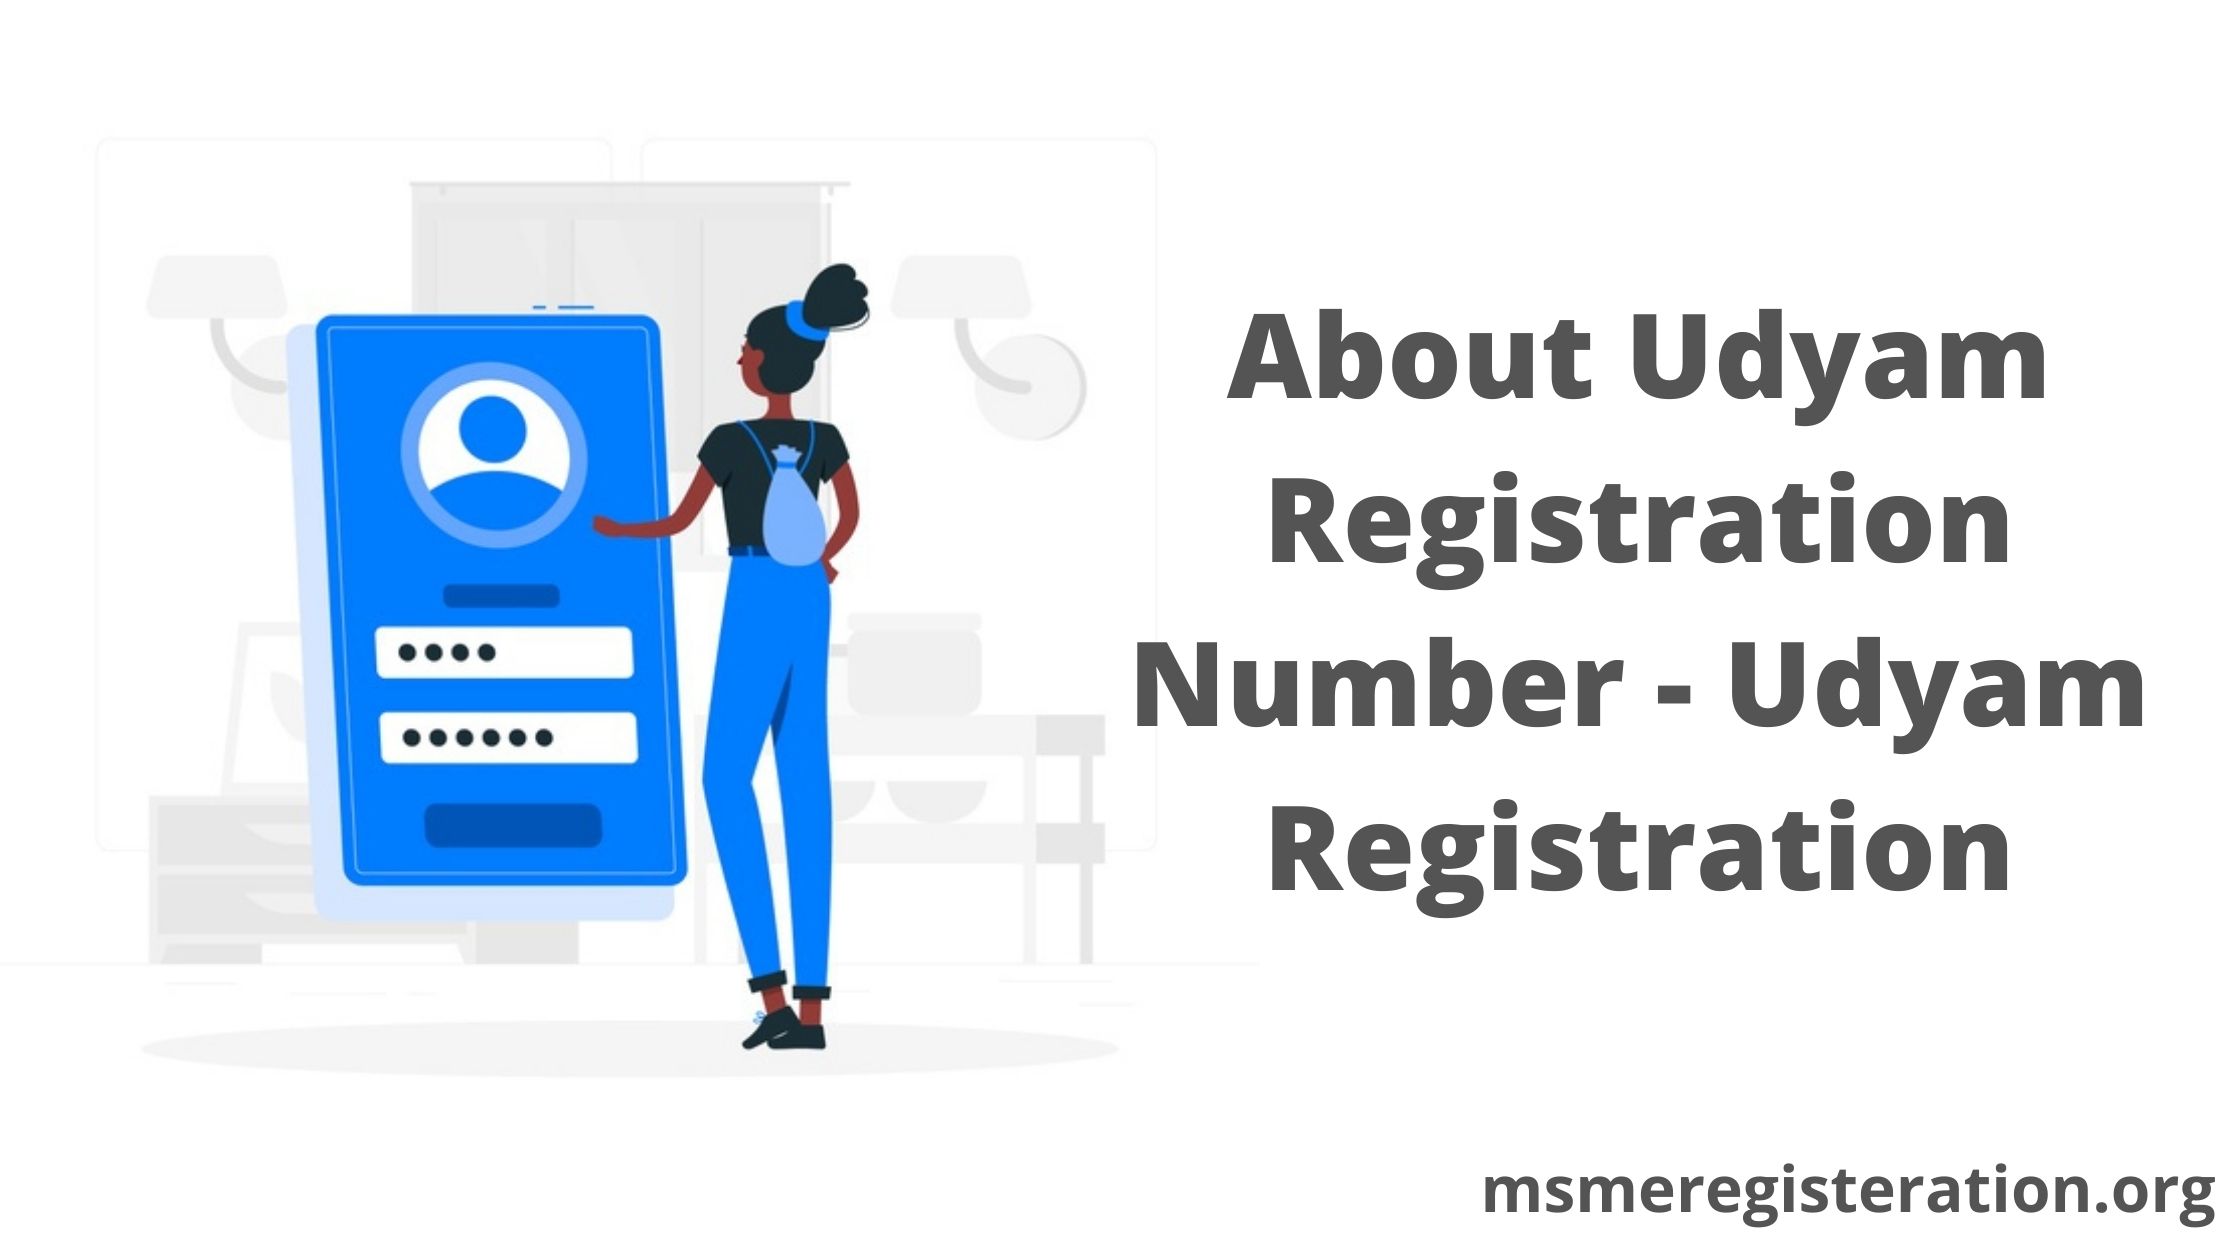 About Udyam Registration Number - Udyam Registration